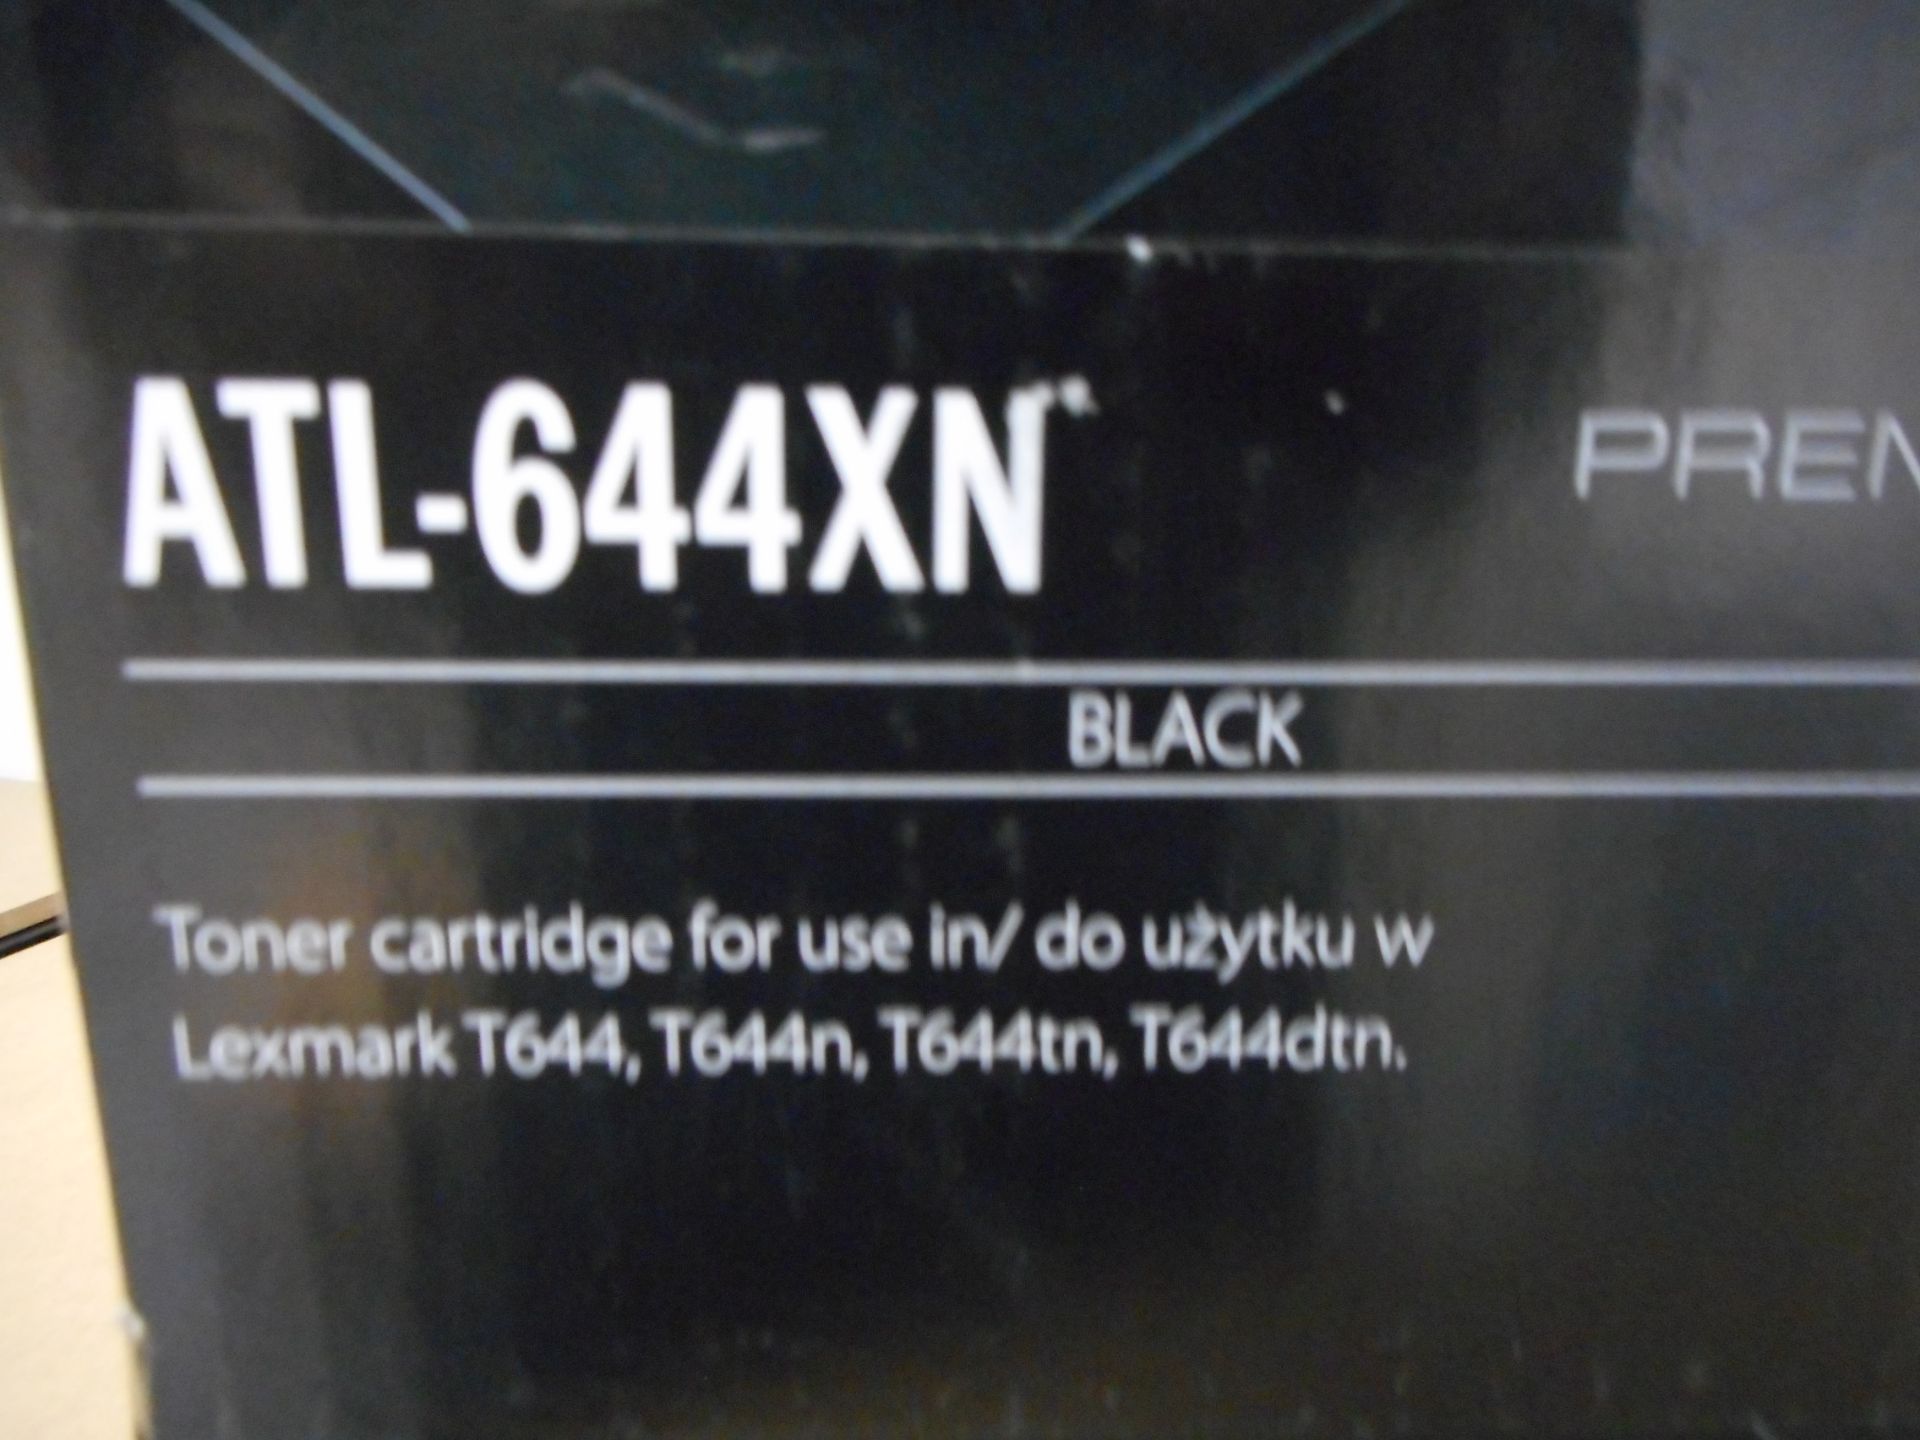 1x Active Jet Black Toner Cartridge ATL644XNGrad